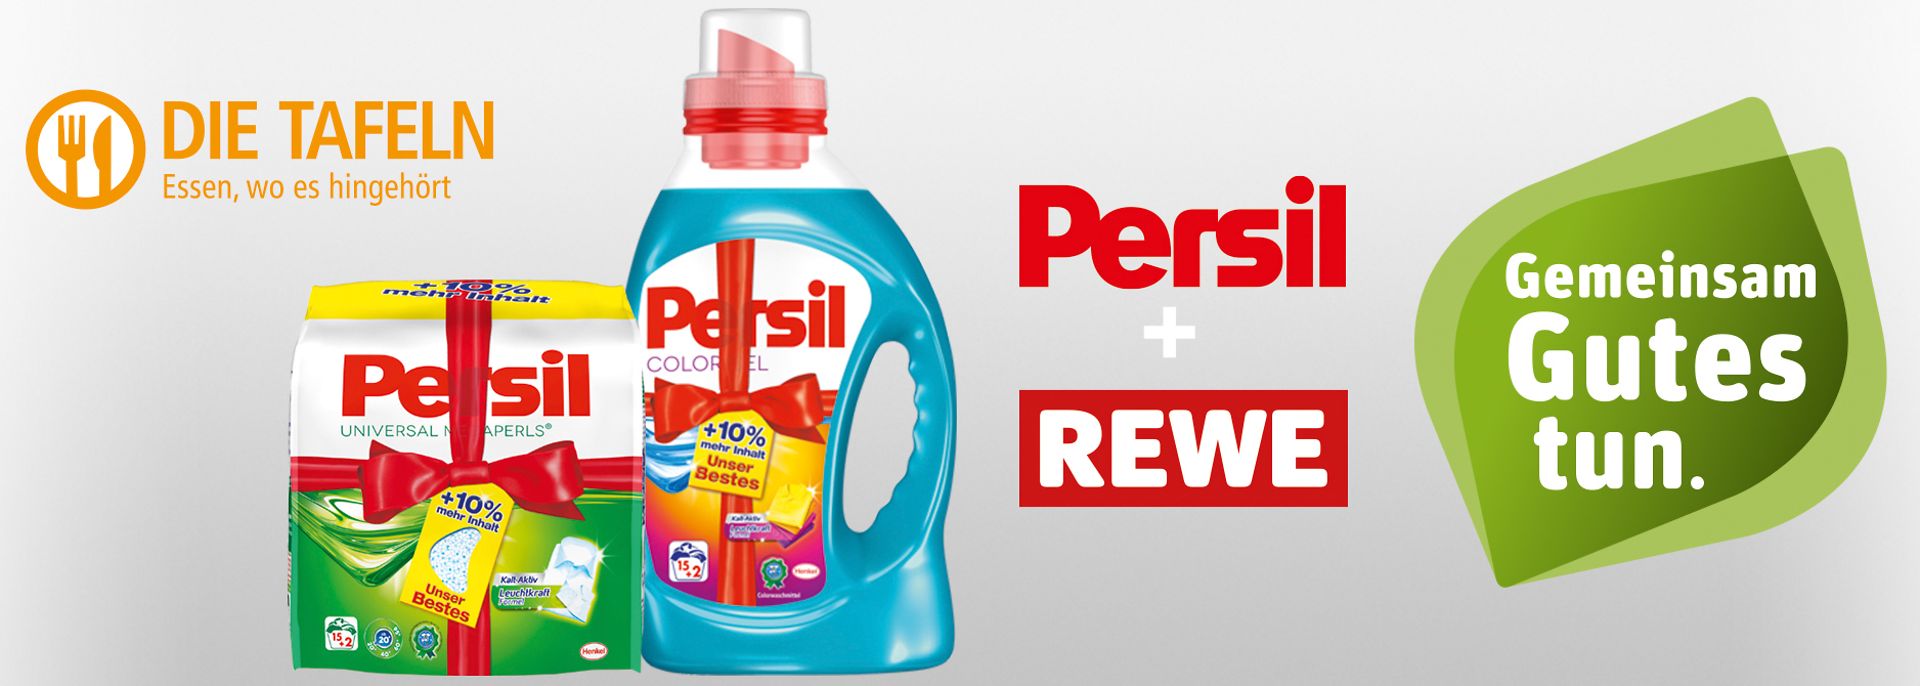 
Im Rahmen der Initiative „Gemeinsam Gutes tun“ spenden Persil und Rewe beim Kauf von zwei Persil Aktions-Produkten ein weiteres Persil-Produkt an die Tafeln.